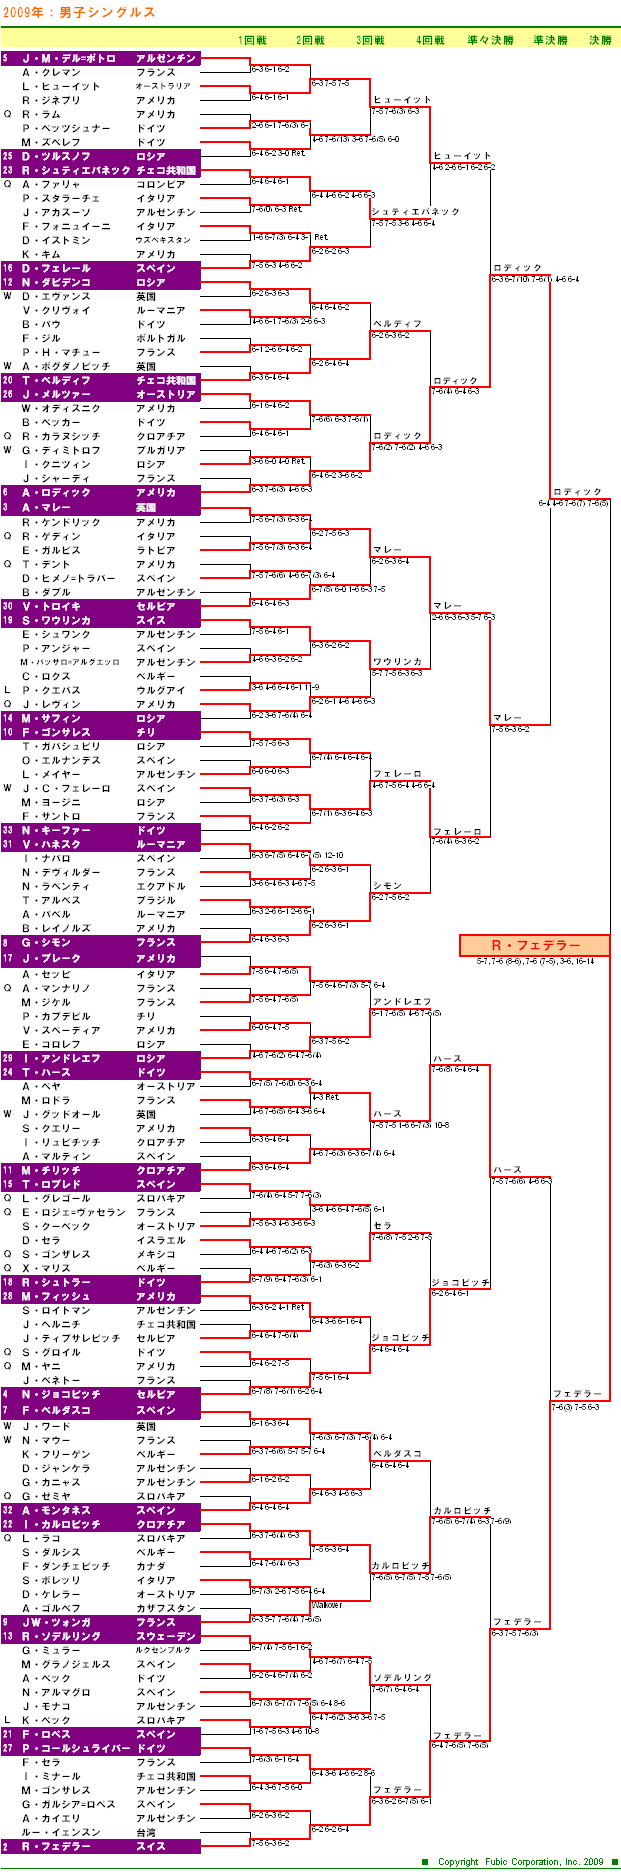 ウィンブルドンテニス2009　男子シングルスドロー表